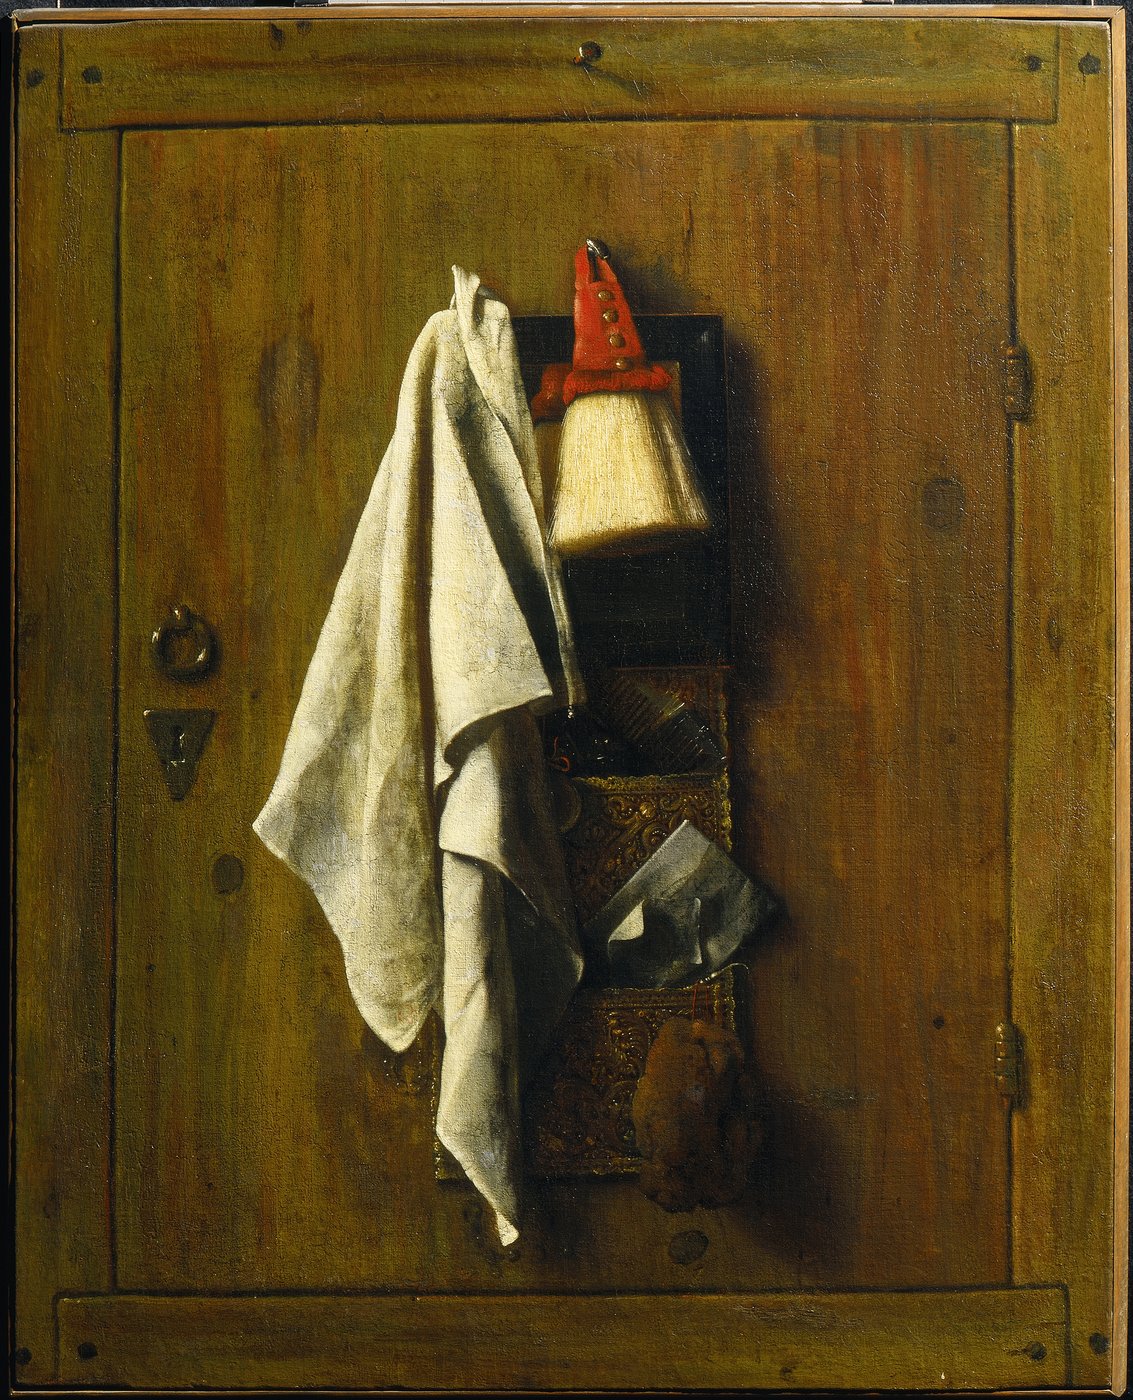 Gemälde einer Holztüre auf der ein Kulturbeutel mit Kamm, Bartpinsel, Schwamm und weiteren Utensilien hängt, daneben hängt ein weißes Stofftuch